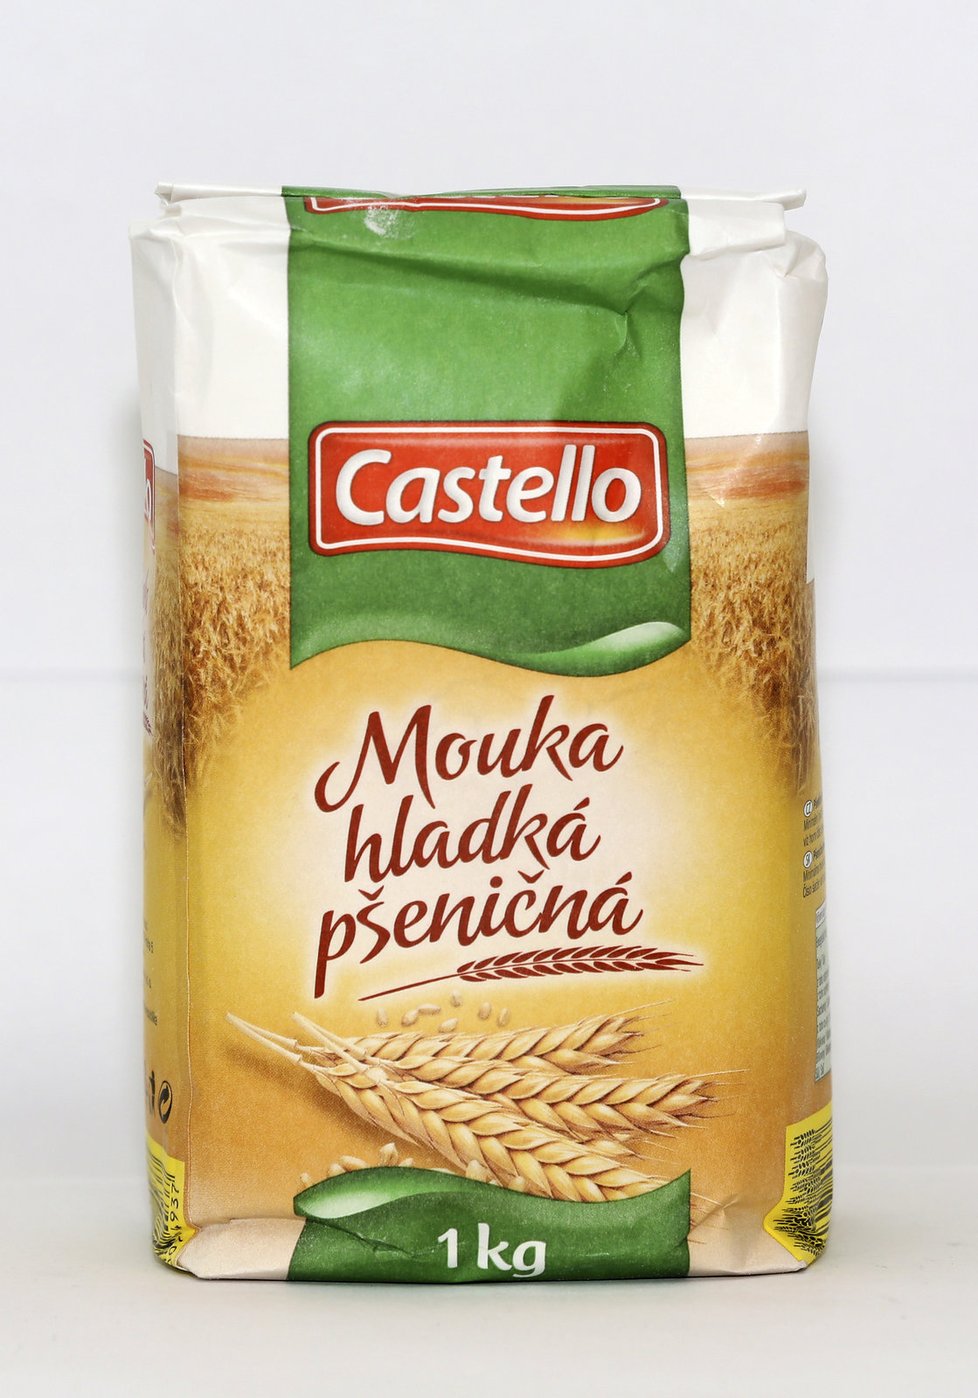 Hladká mouka pšeničná Castello.